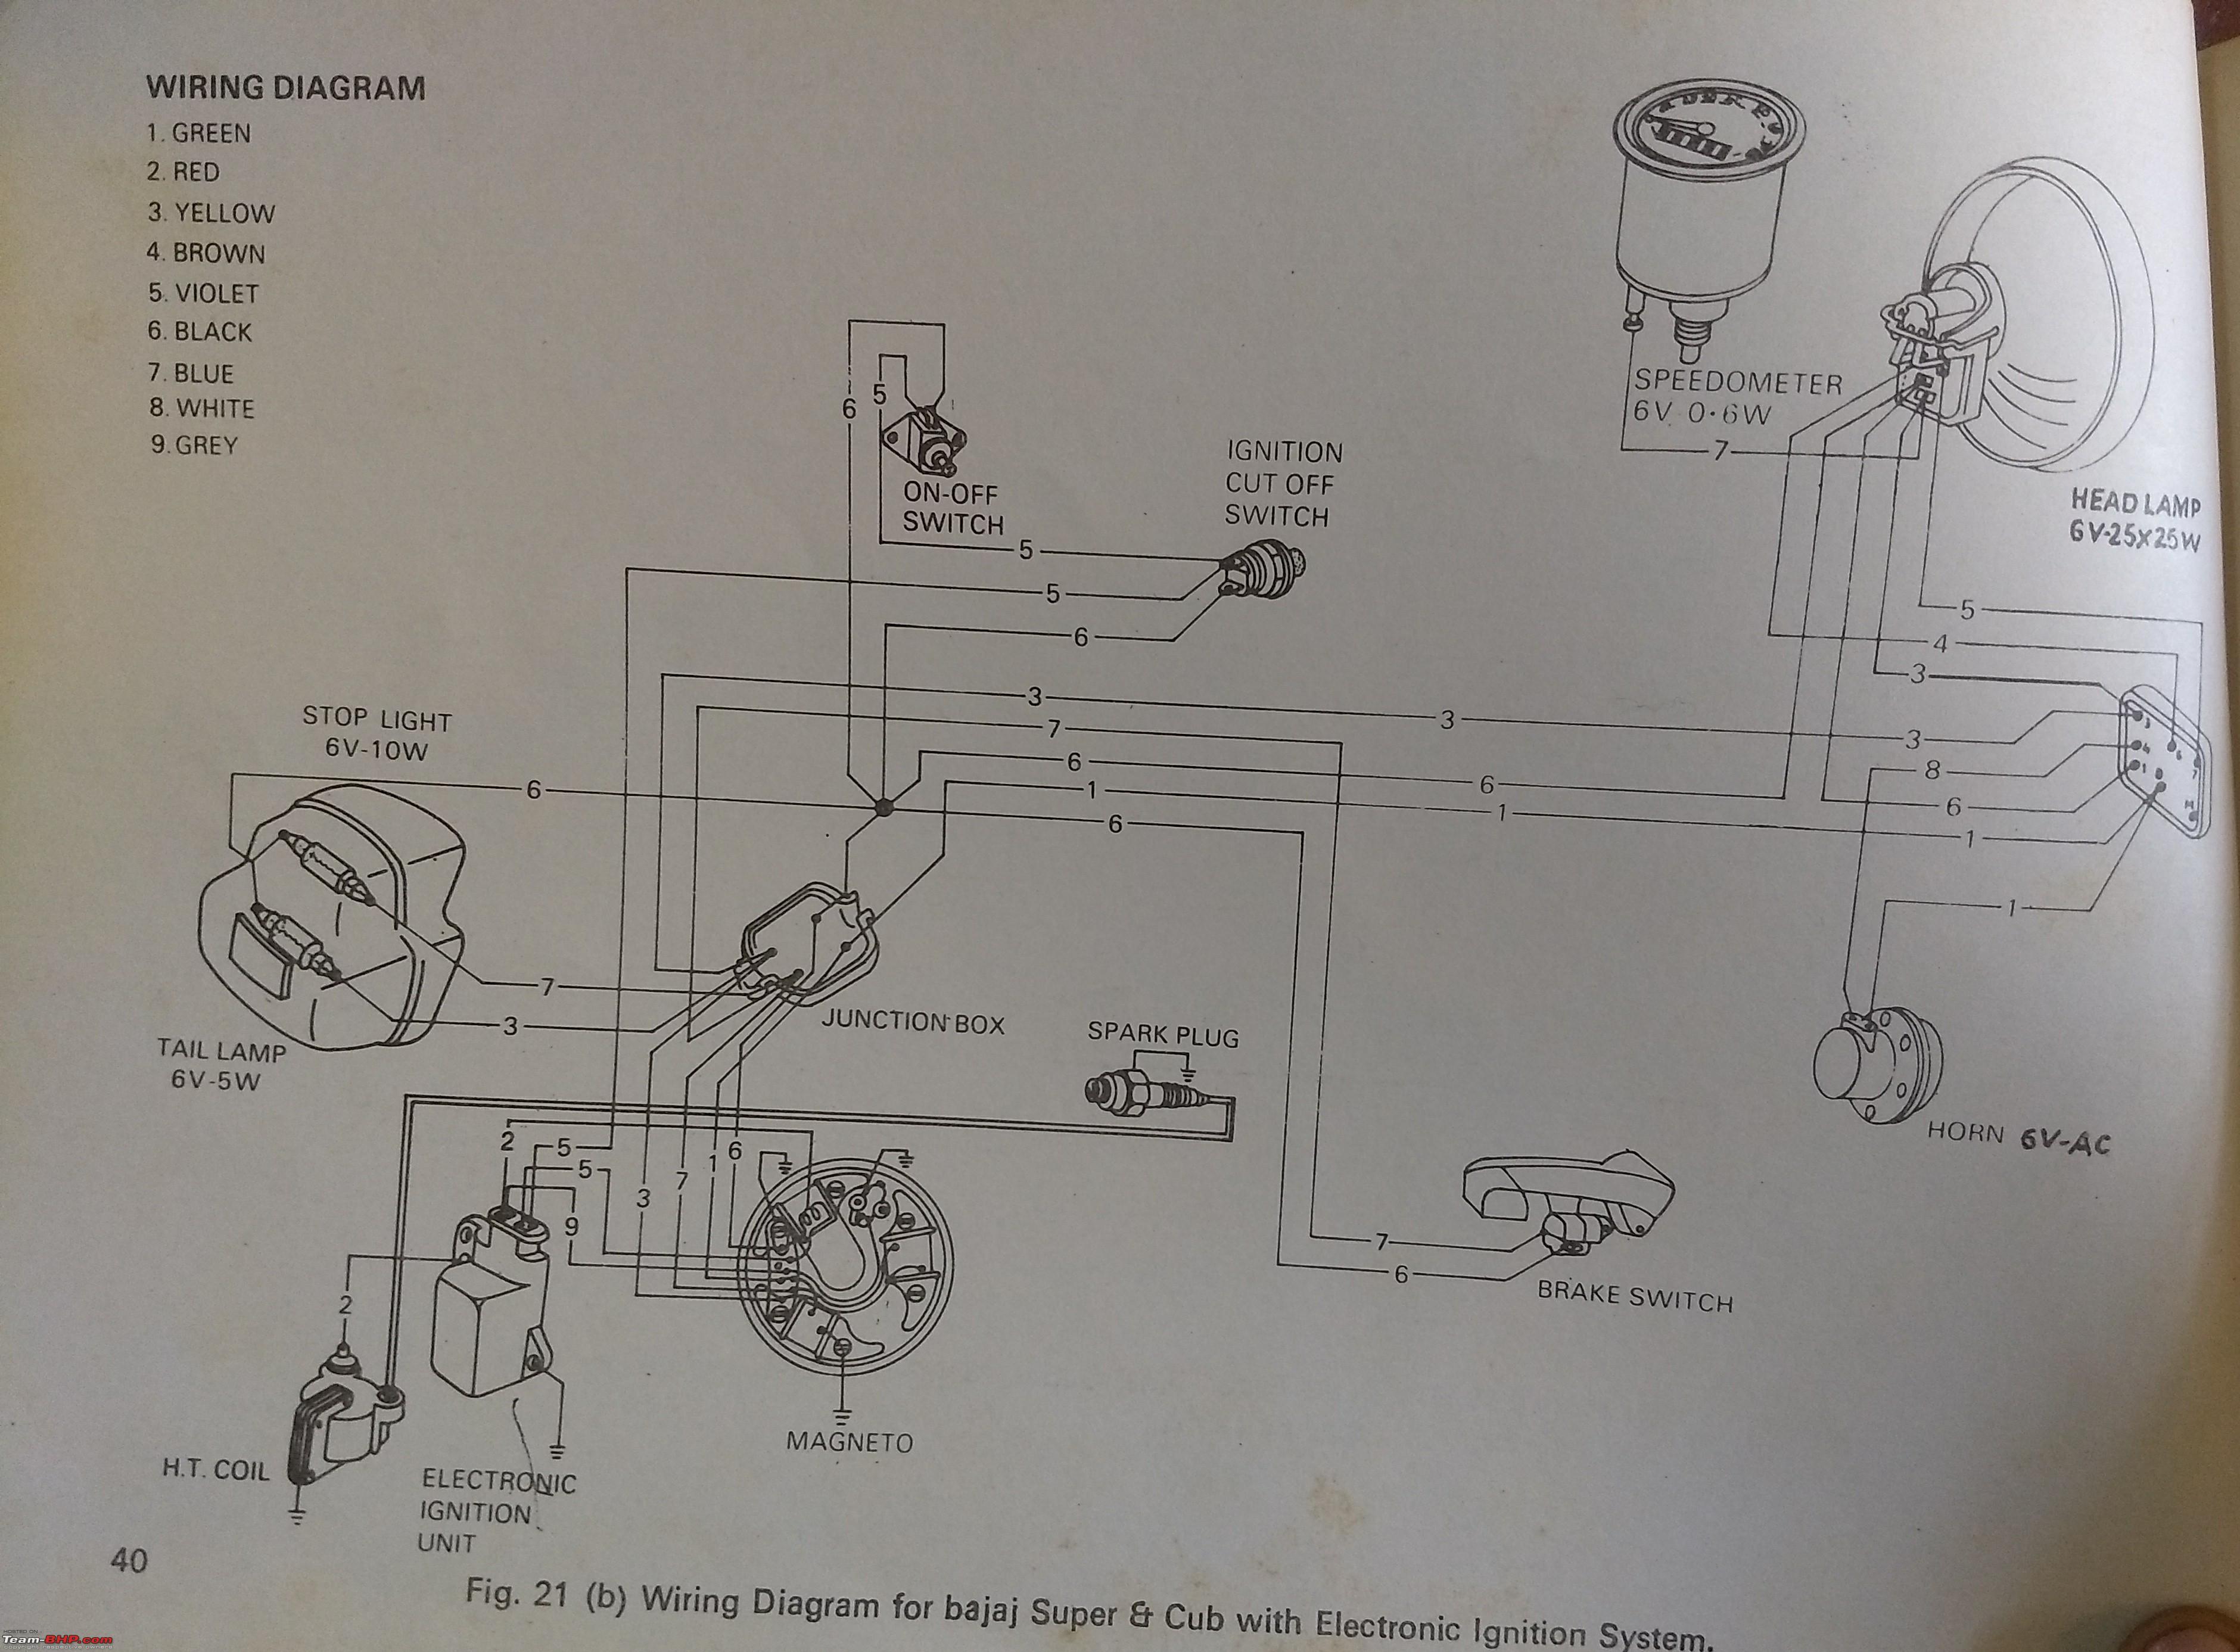 Wiring diagrams of Indian two-wheelers - Team-BHP honda motorcycle wiring diagram pdf 